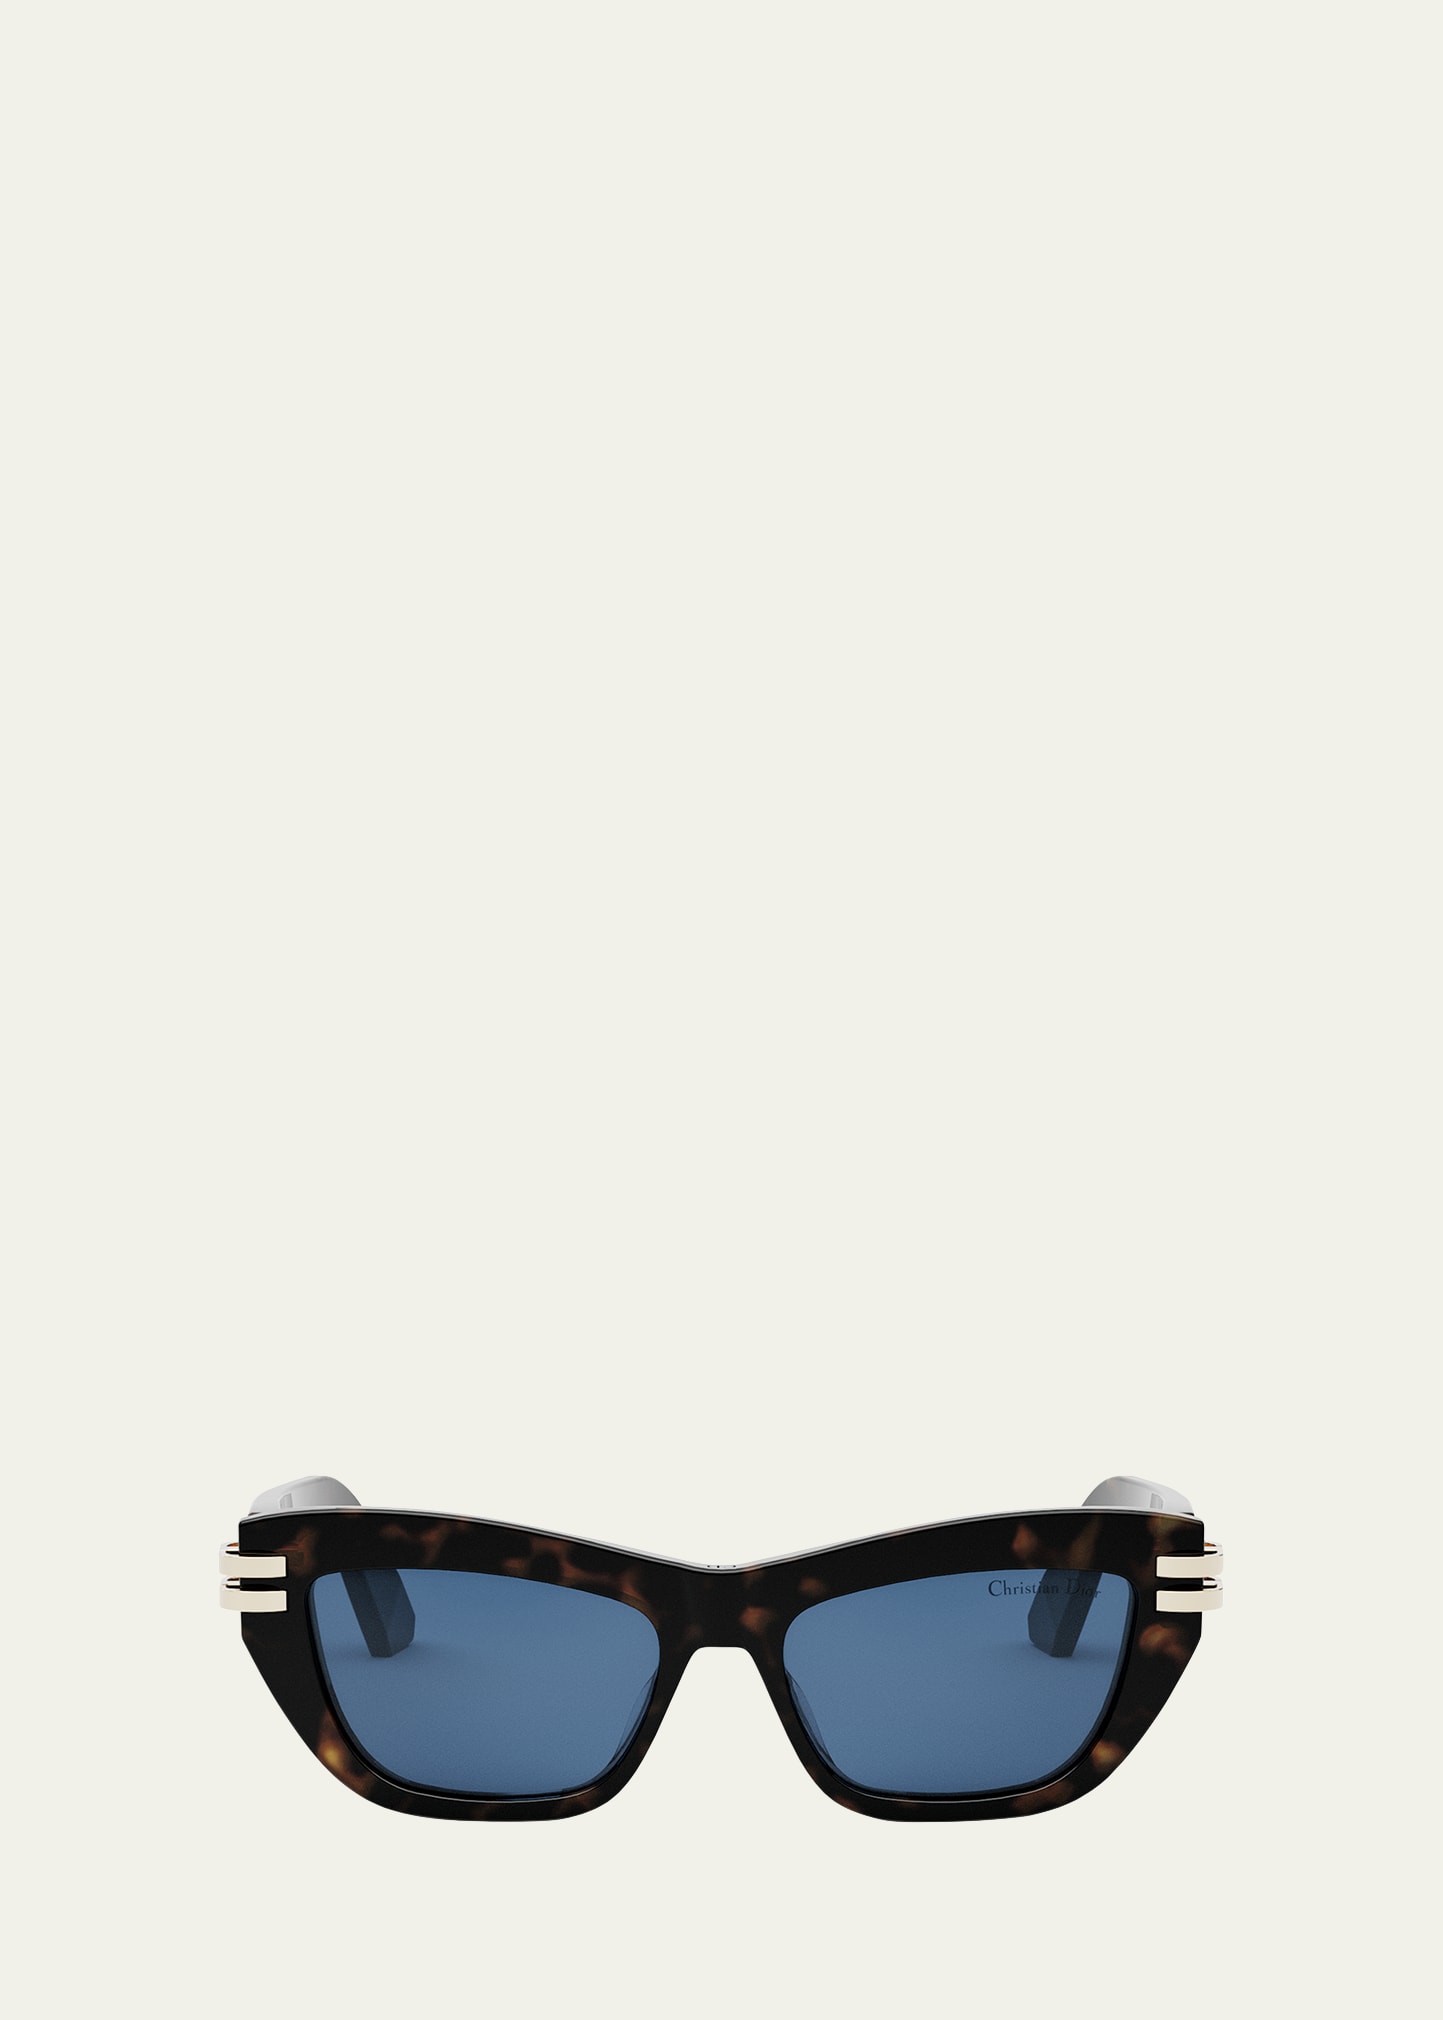 CDior B2U Sunglasses